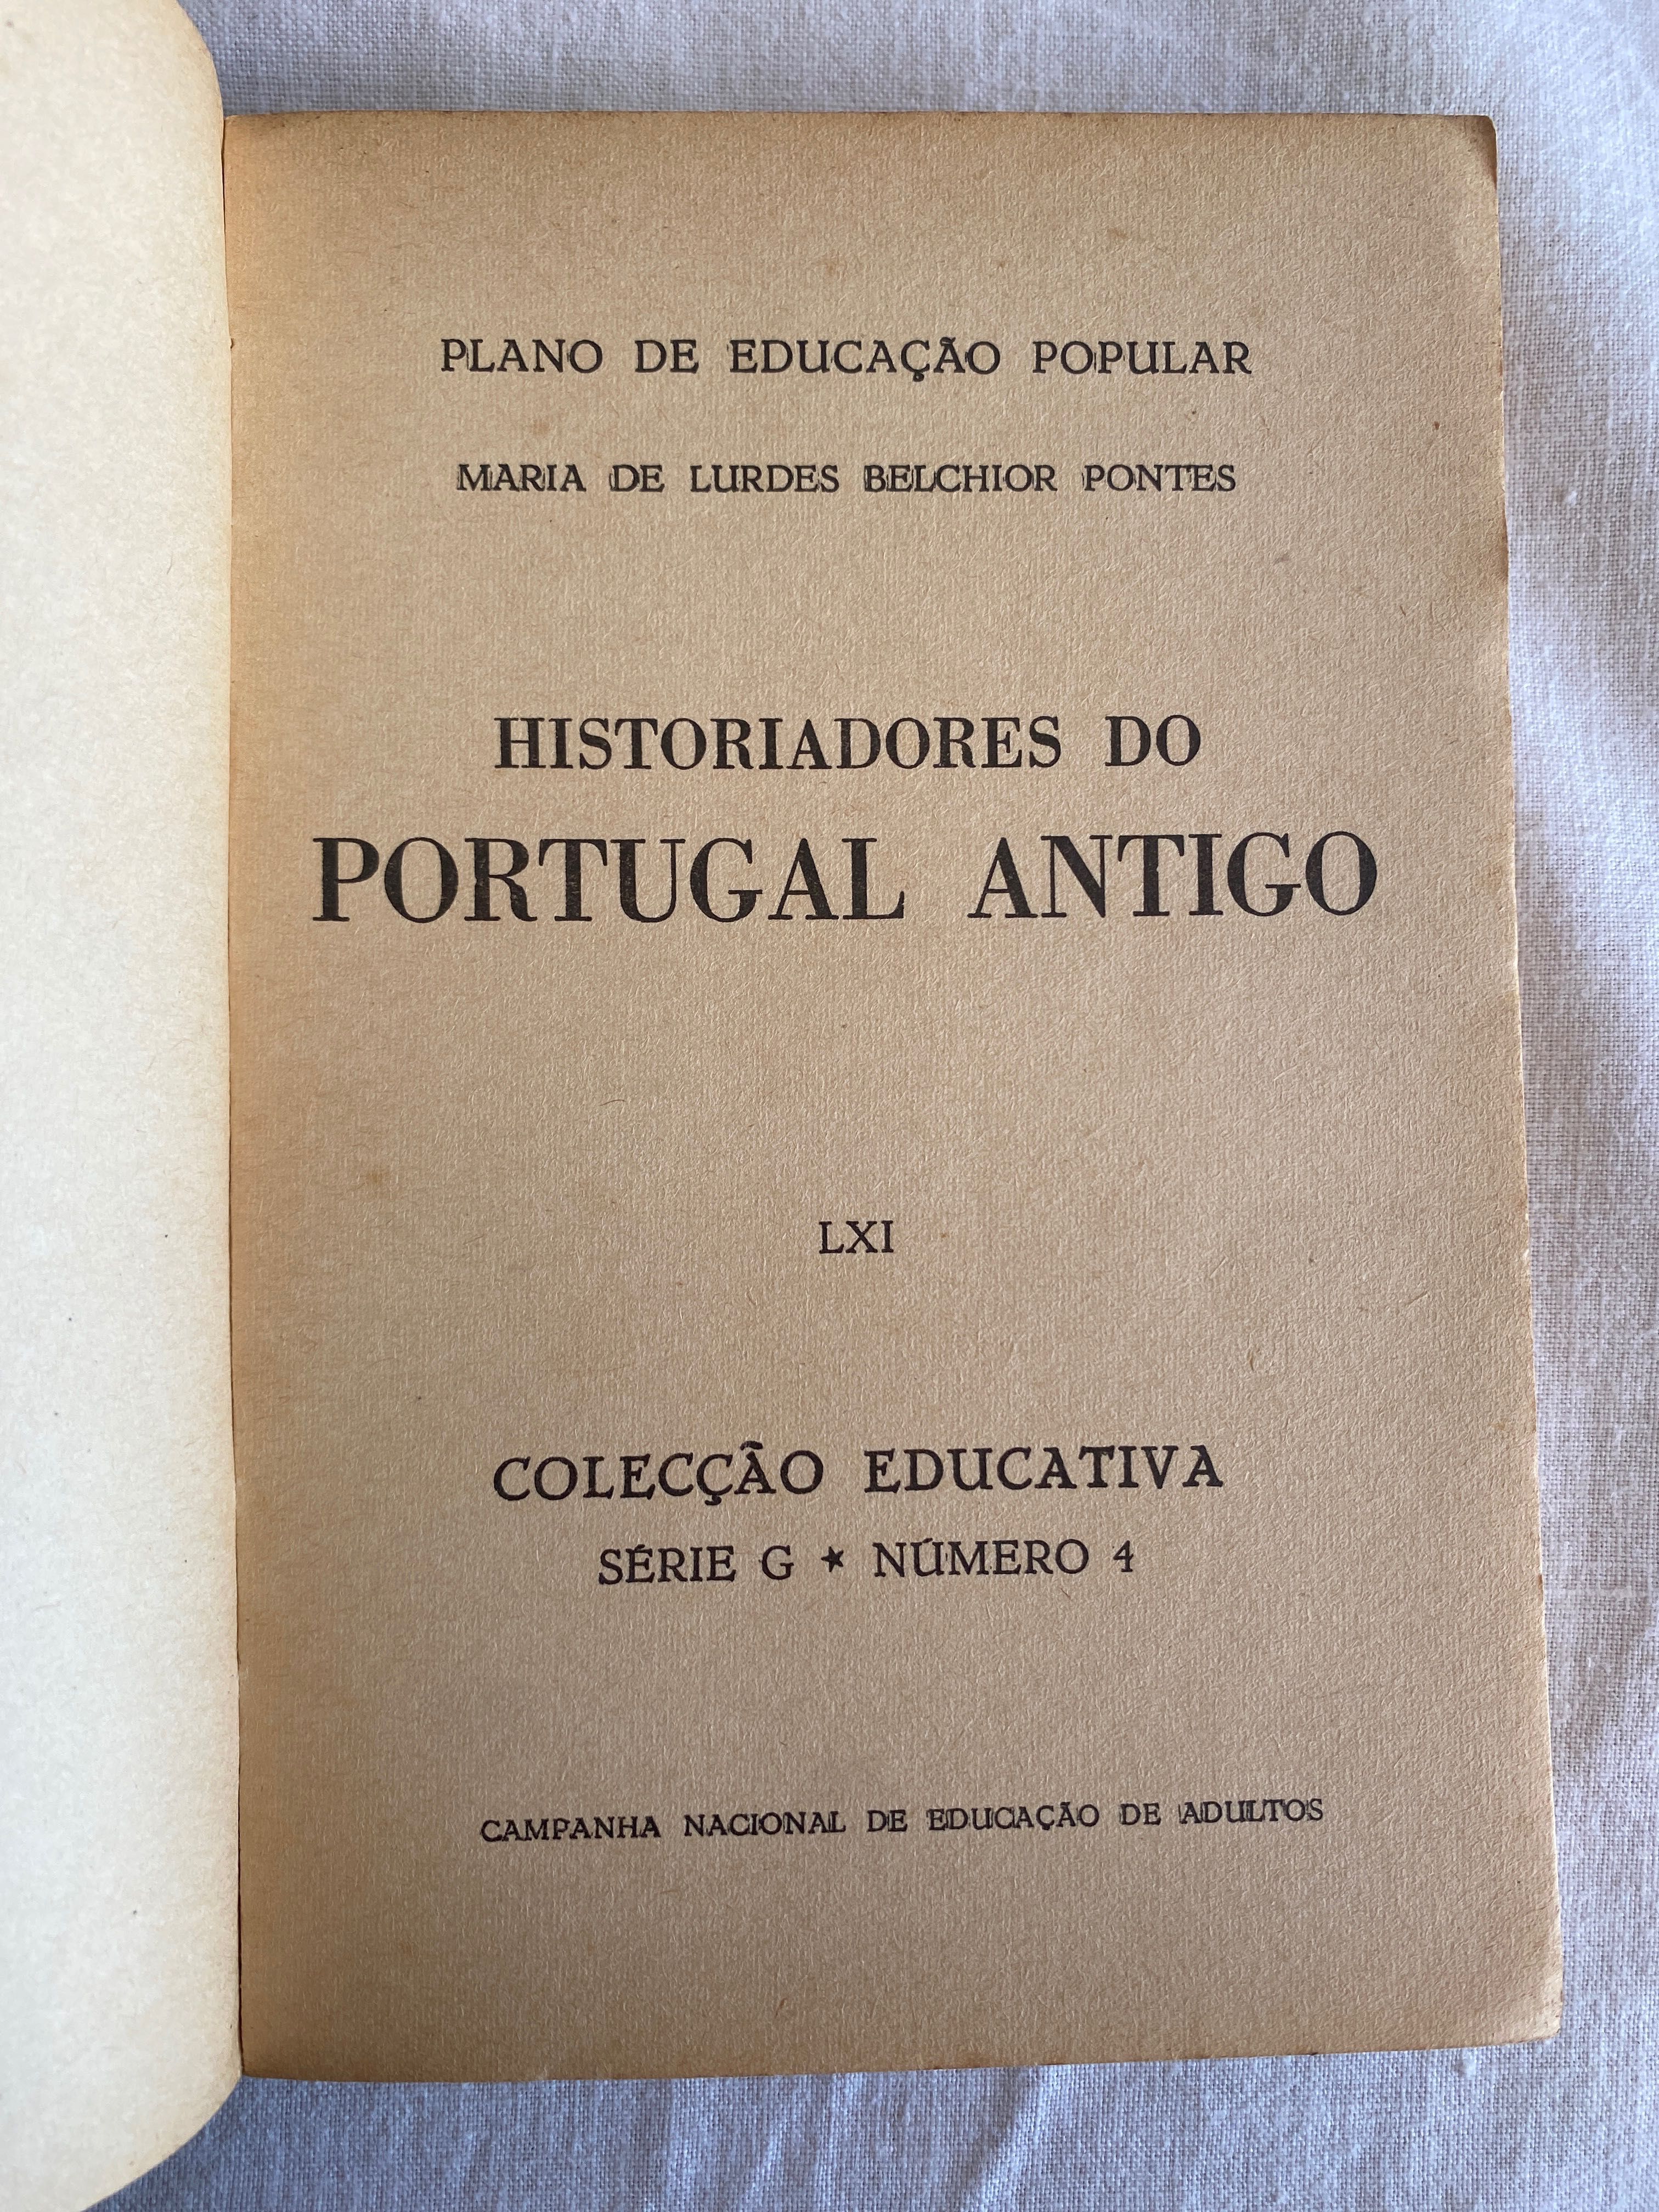 Historiadores do Portugal Antigo coleção educativa